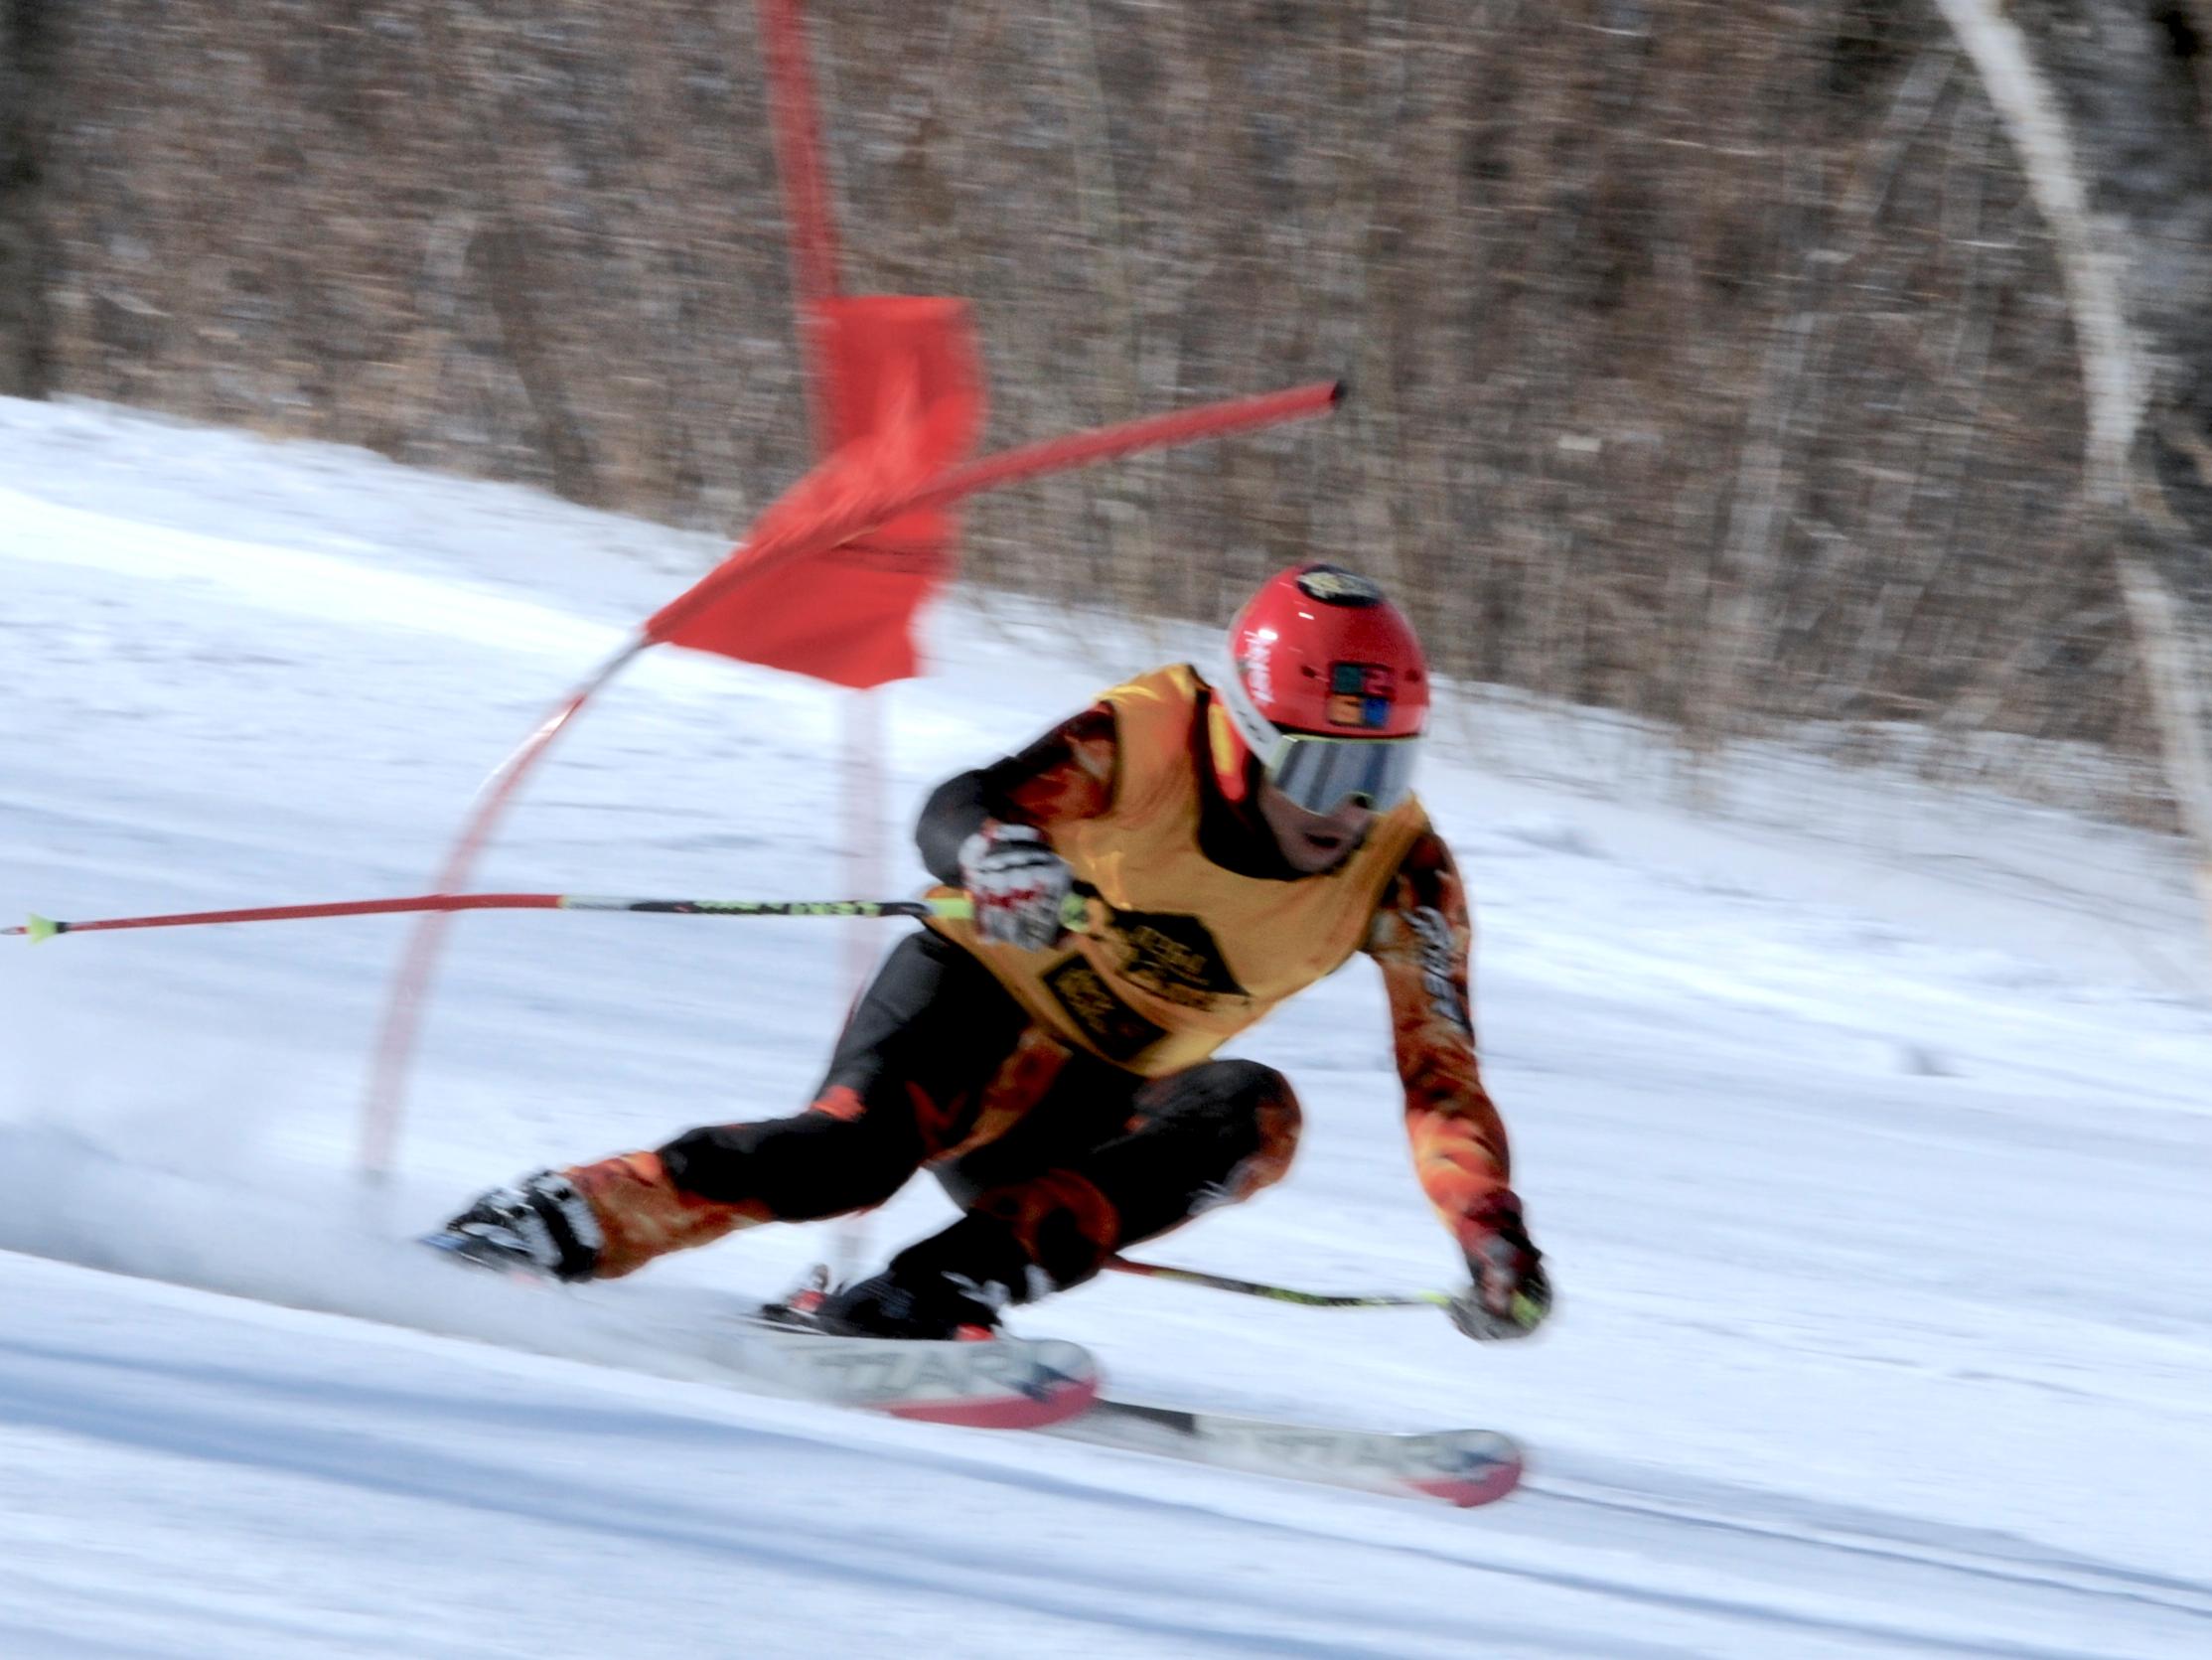 休闲滑雪运动中的高水平竞技 - 微信公众平台精